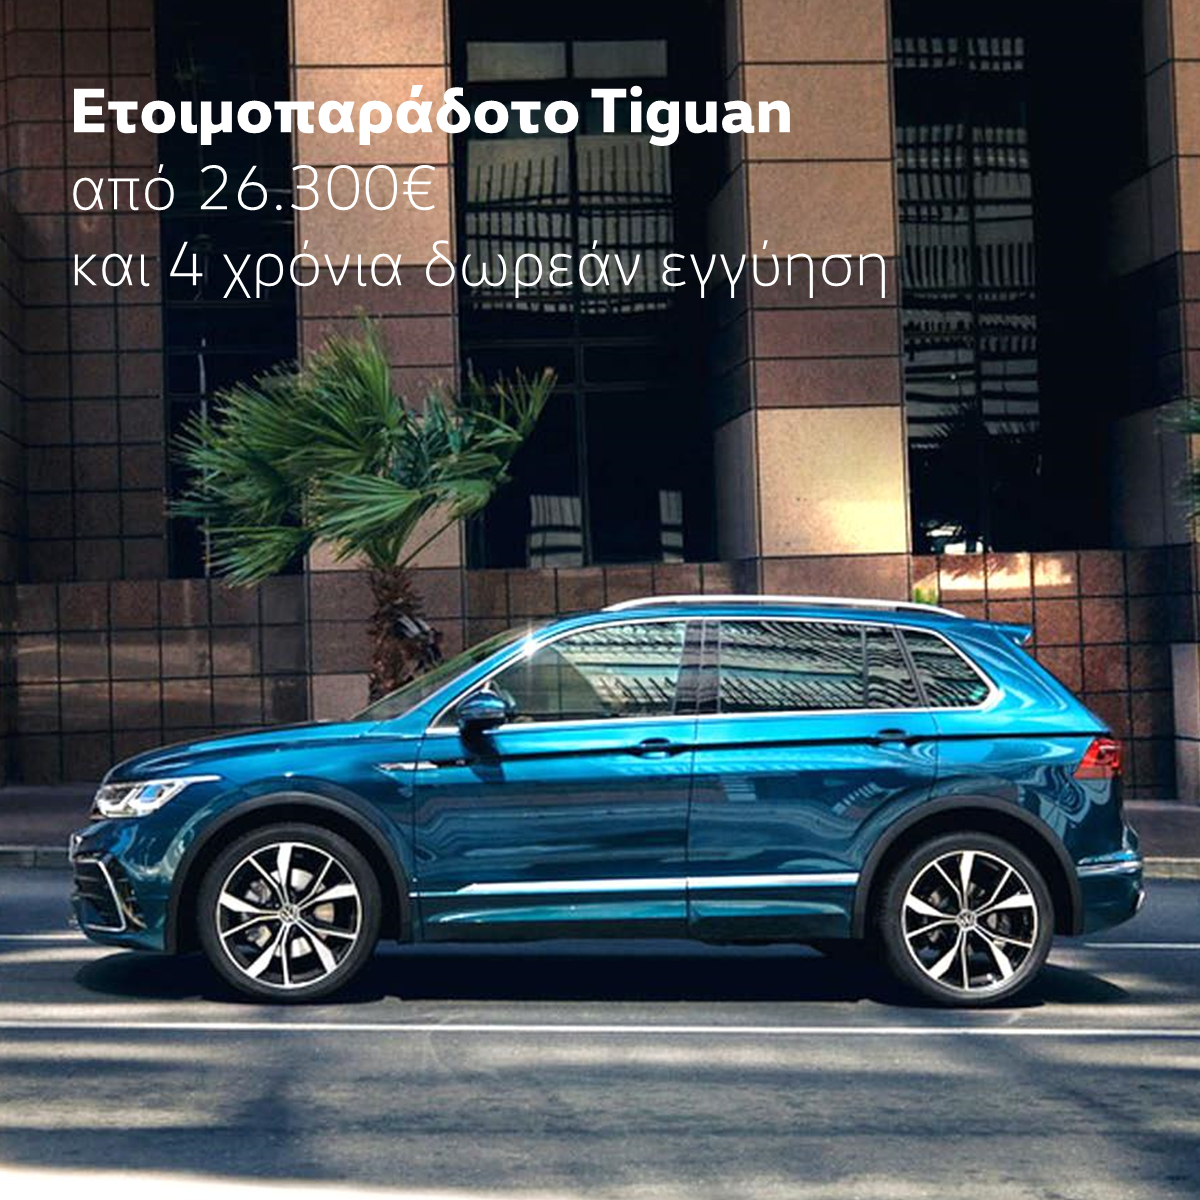 Νέα Προσφορά Volkswagen Tiguan Σεπτέμβριος 2021